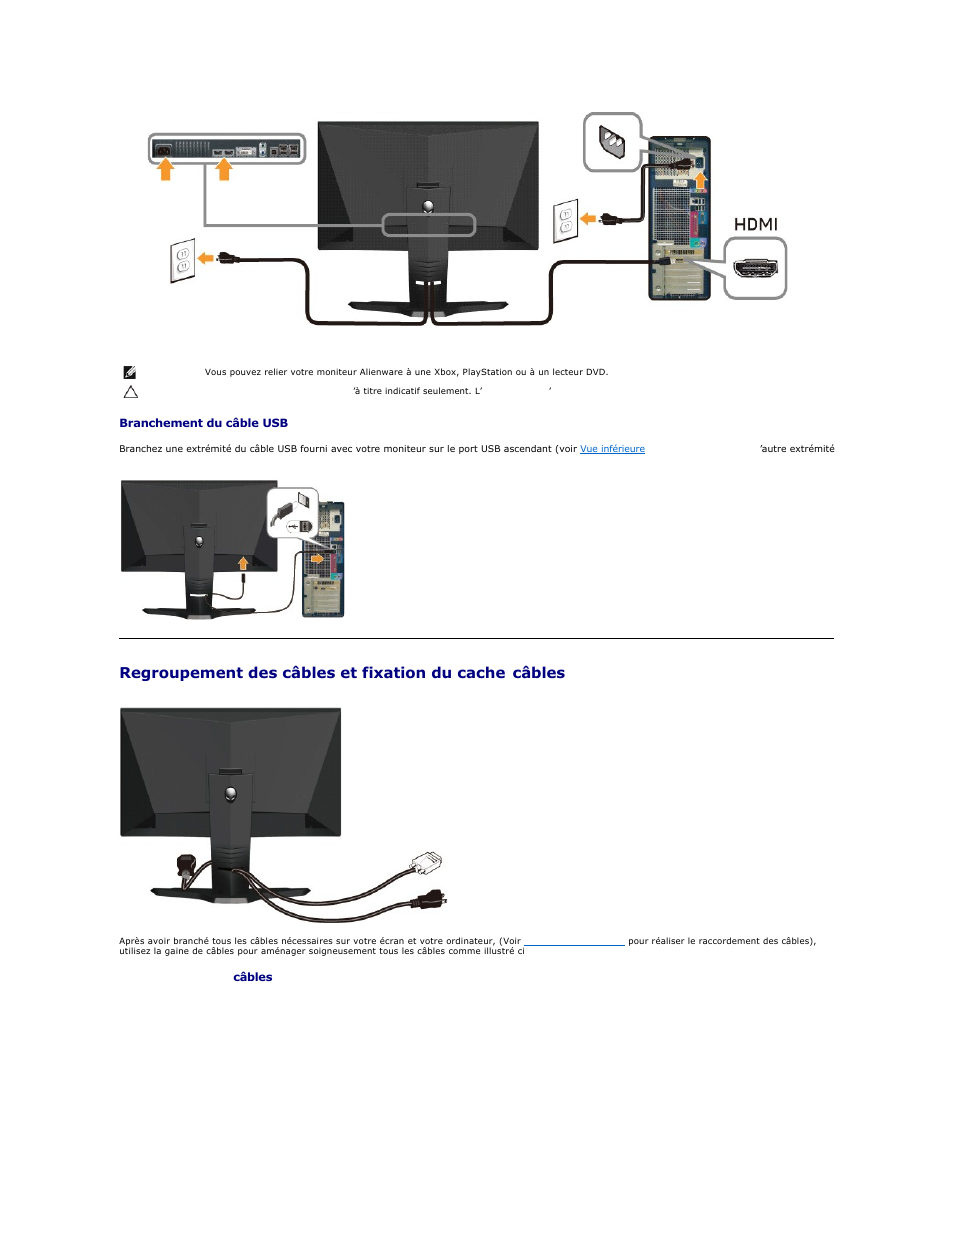 Regroupement des câbles et fixation du cache, Câbles | Dell AW2210 Monitor Manuel d'utilisation | Page 26 / 31